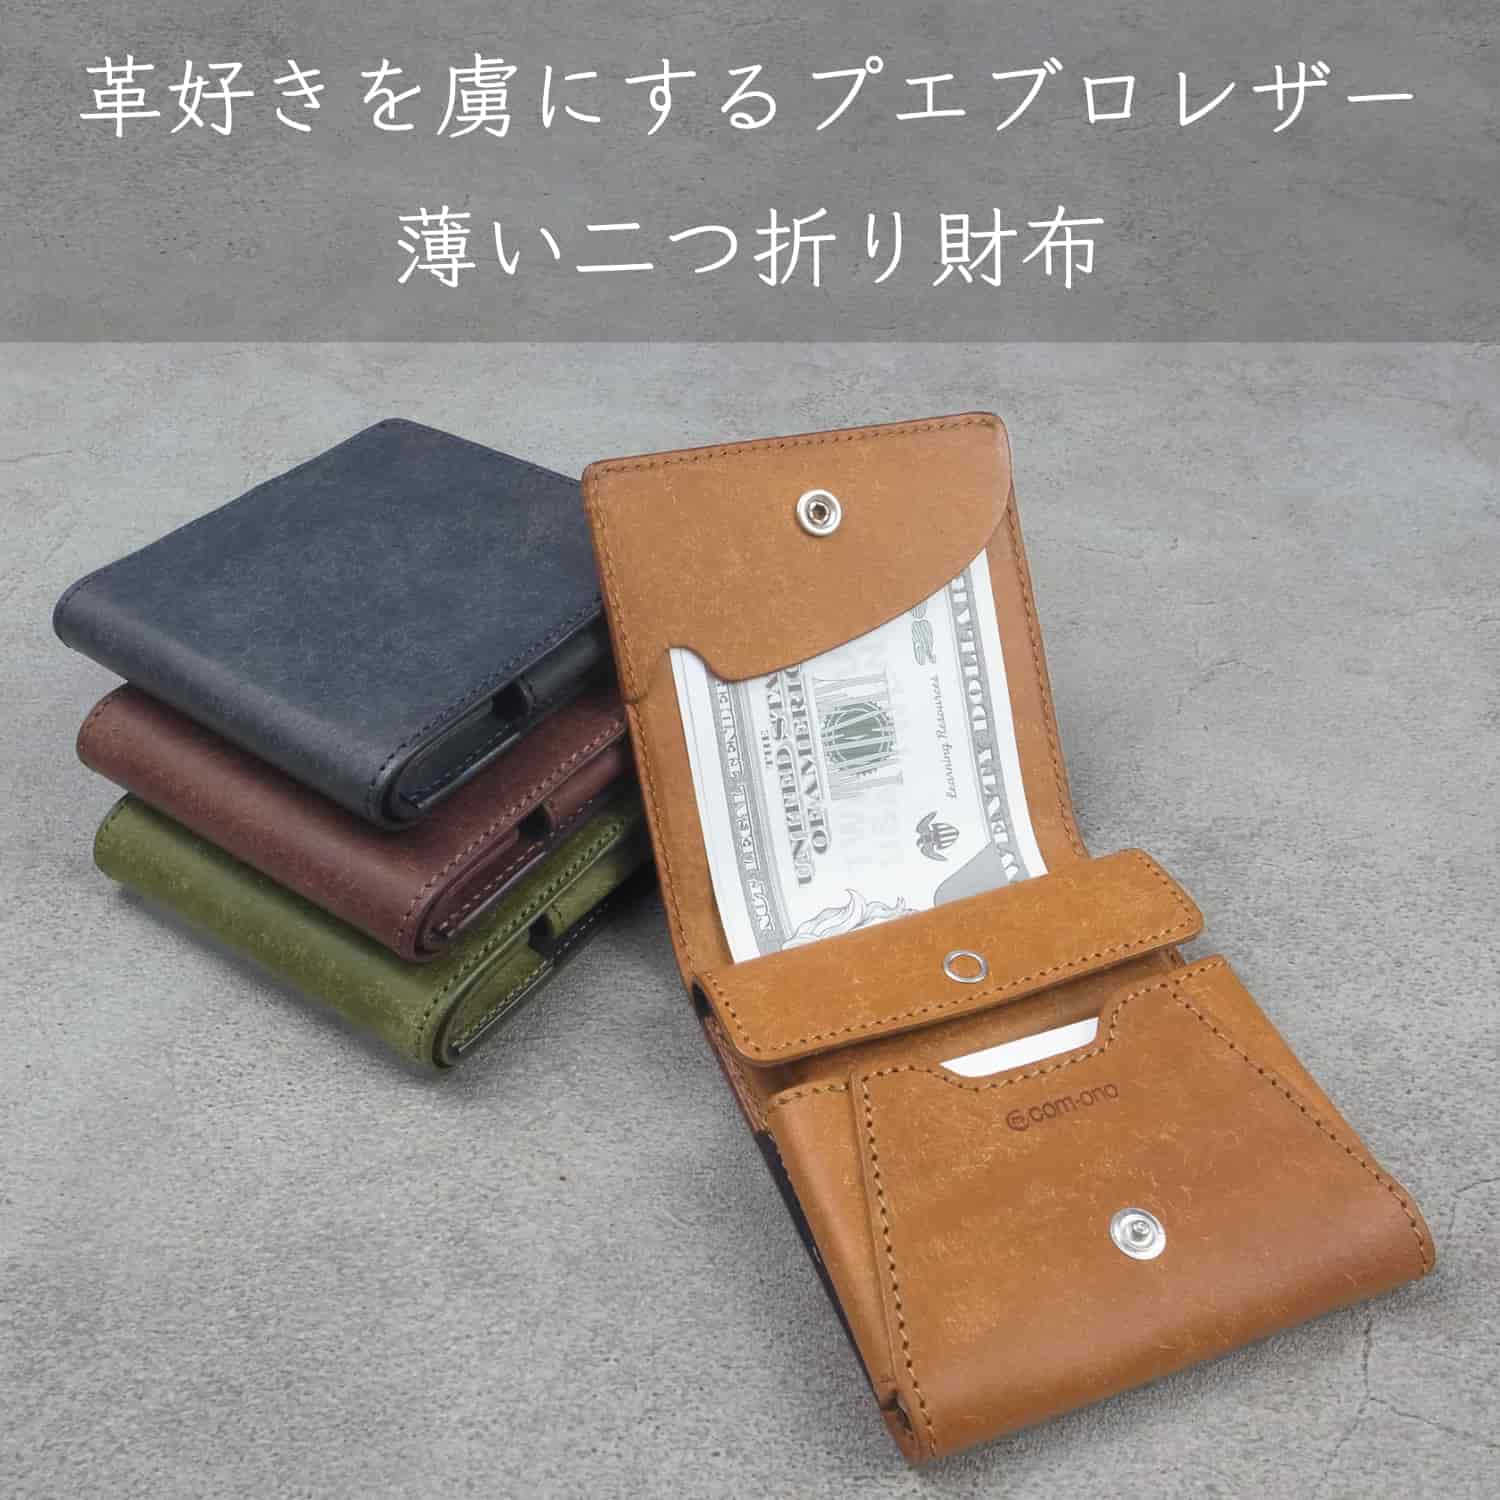 プエブロレザーの薄い財布。厚さ15mm　Slim-005pb / Pueblo